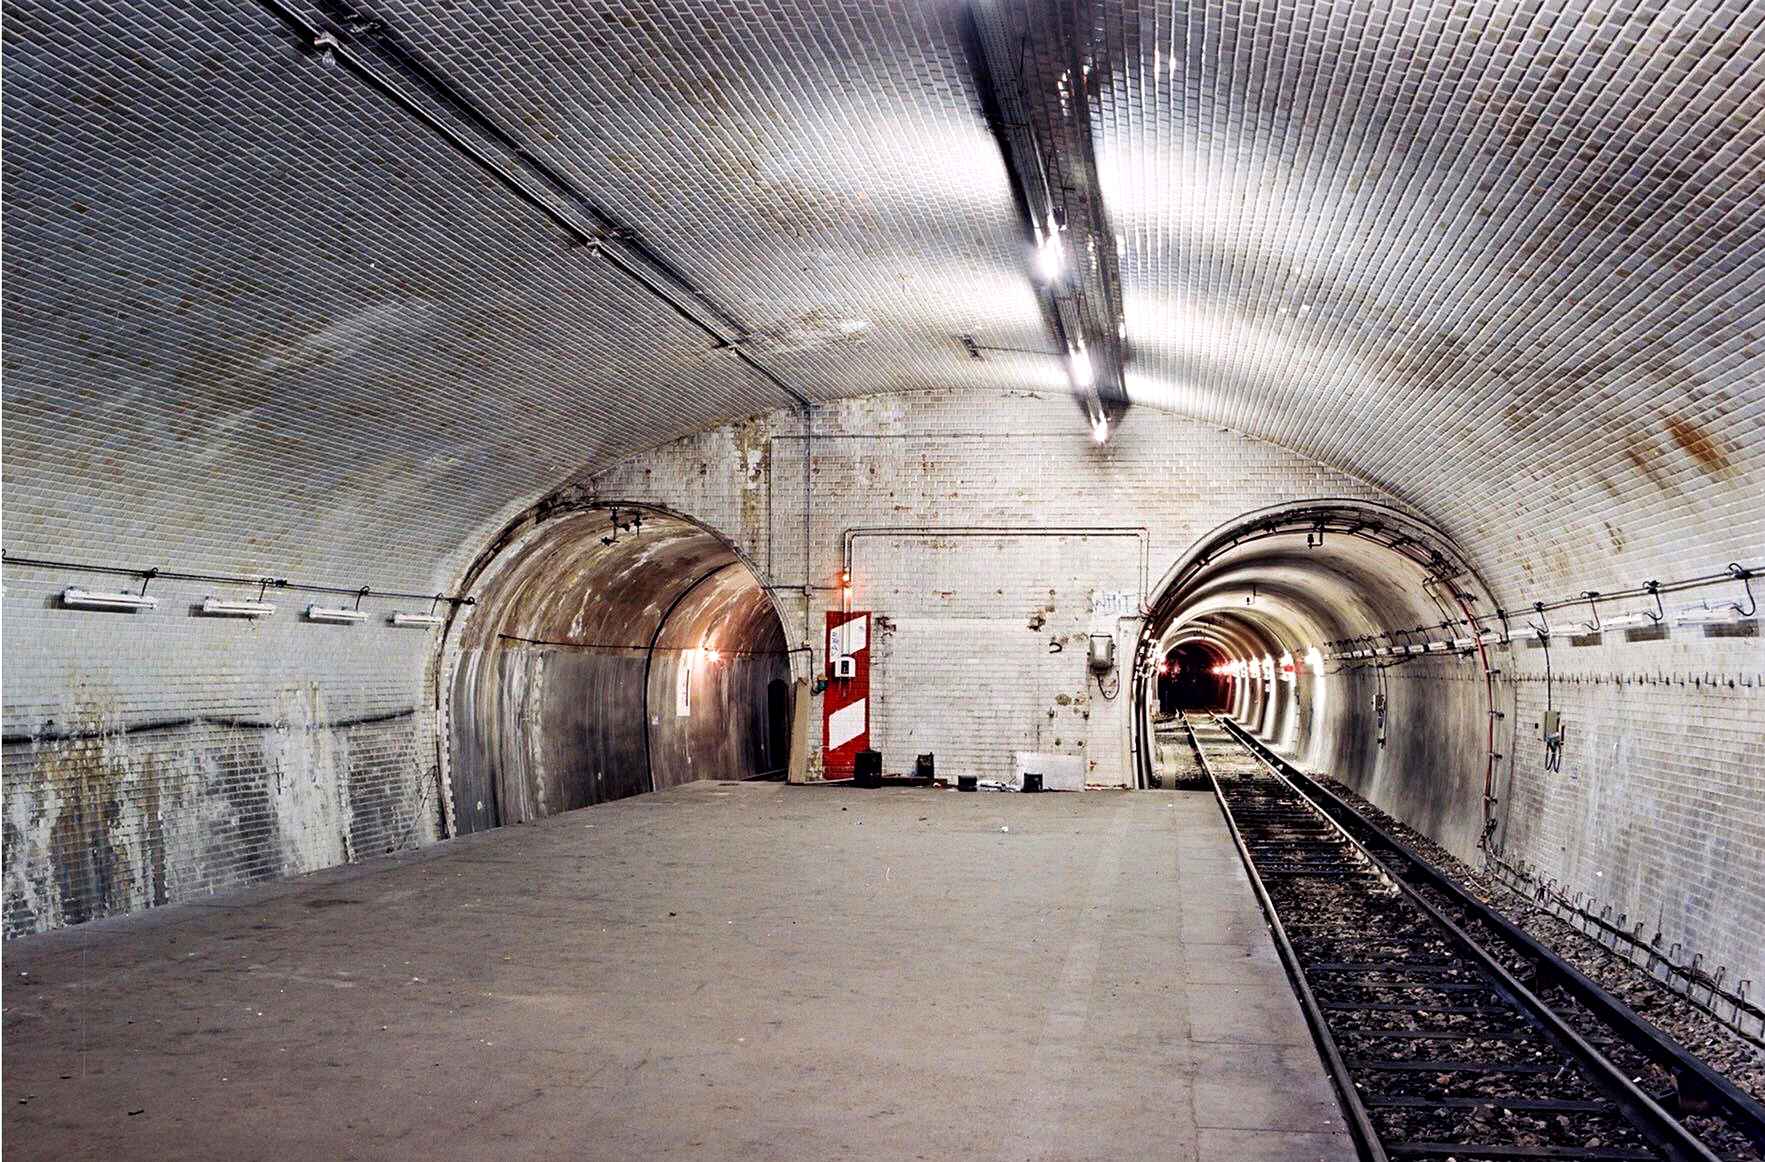 Staţia de metrou Porte Molitor, construită în 1923, e o staţie în care nici un călător nu a pus piciorul. Accesul către staţie nu a fost niciodată finalizat; Porte Molitor e folosită în prezent pe post de depou. Co